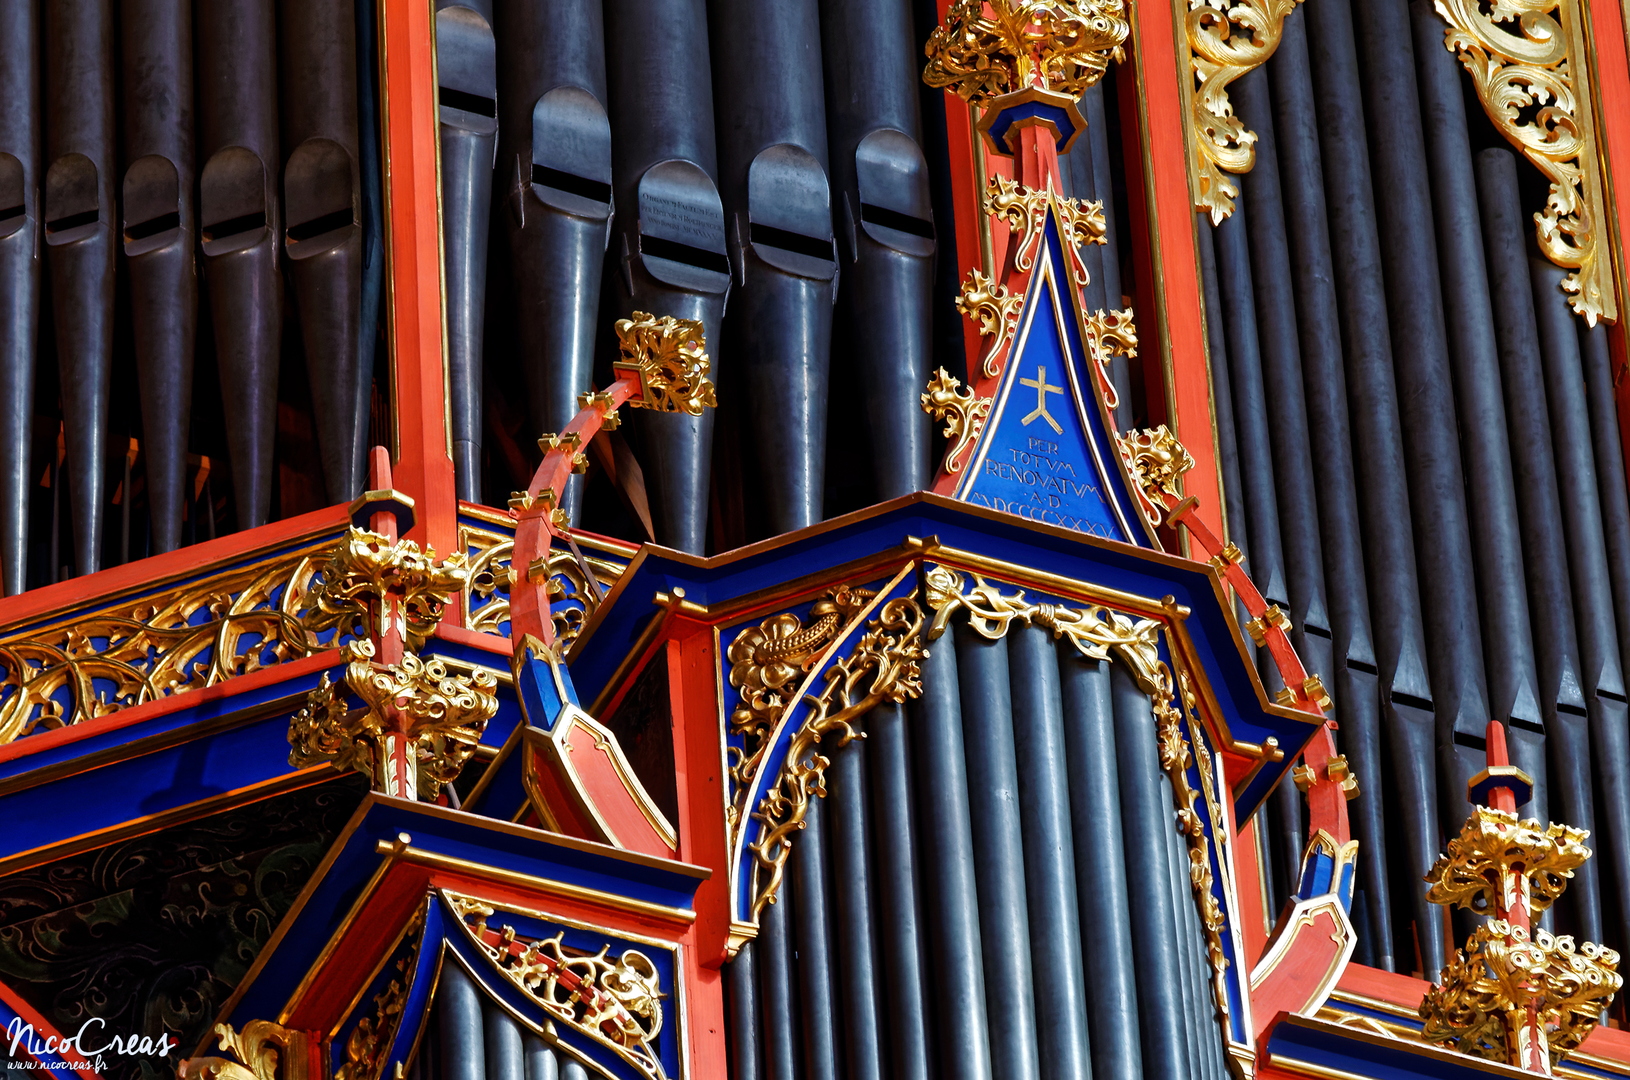 Grand orgue en nid d'hirondelle - DSC_1308_DxO copie.jpg